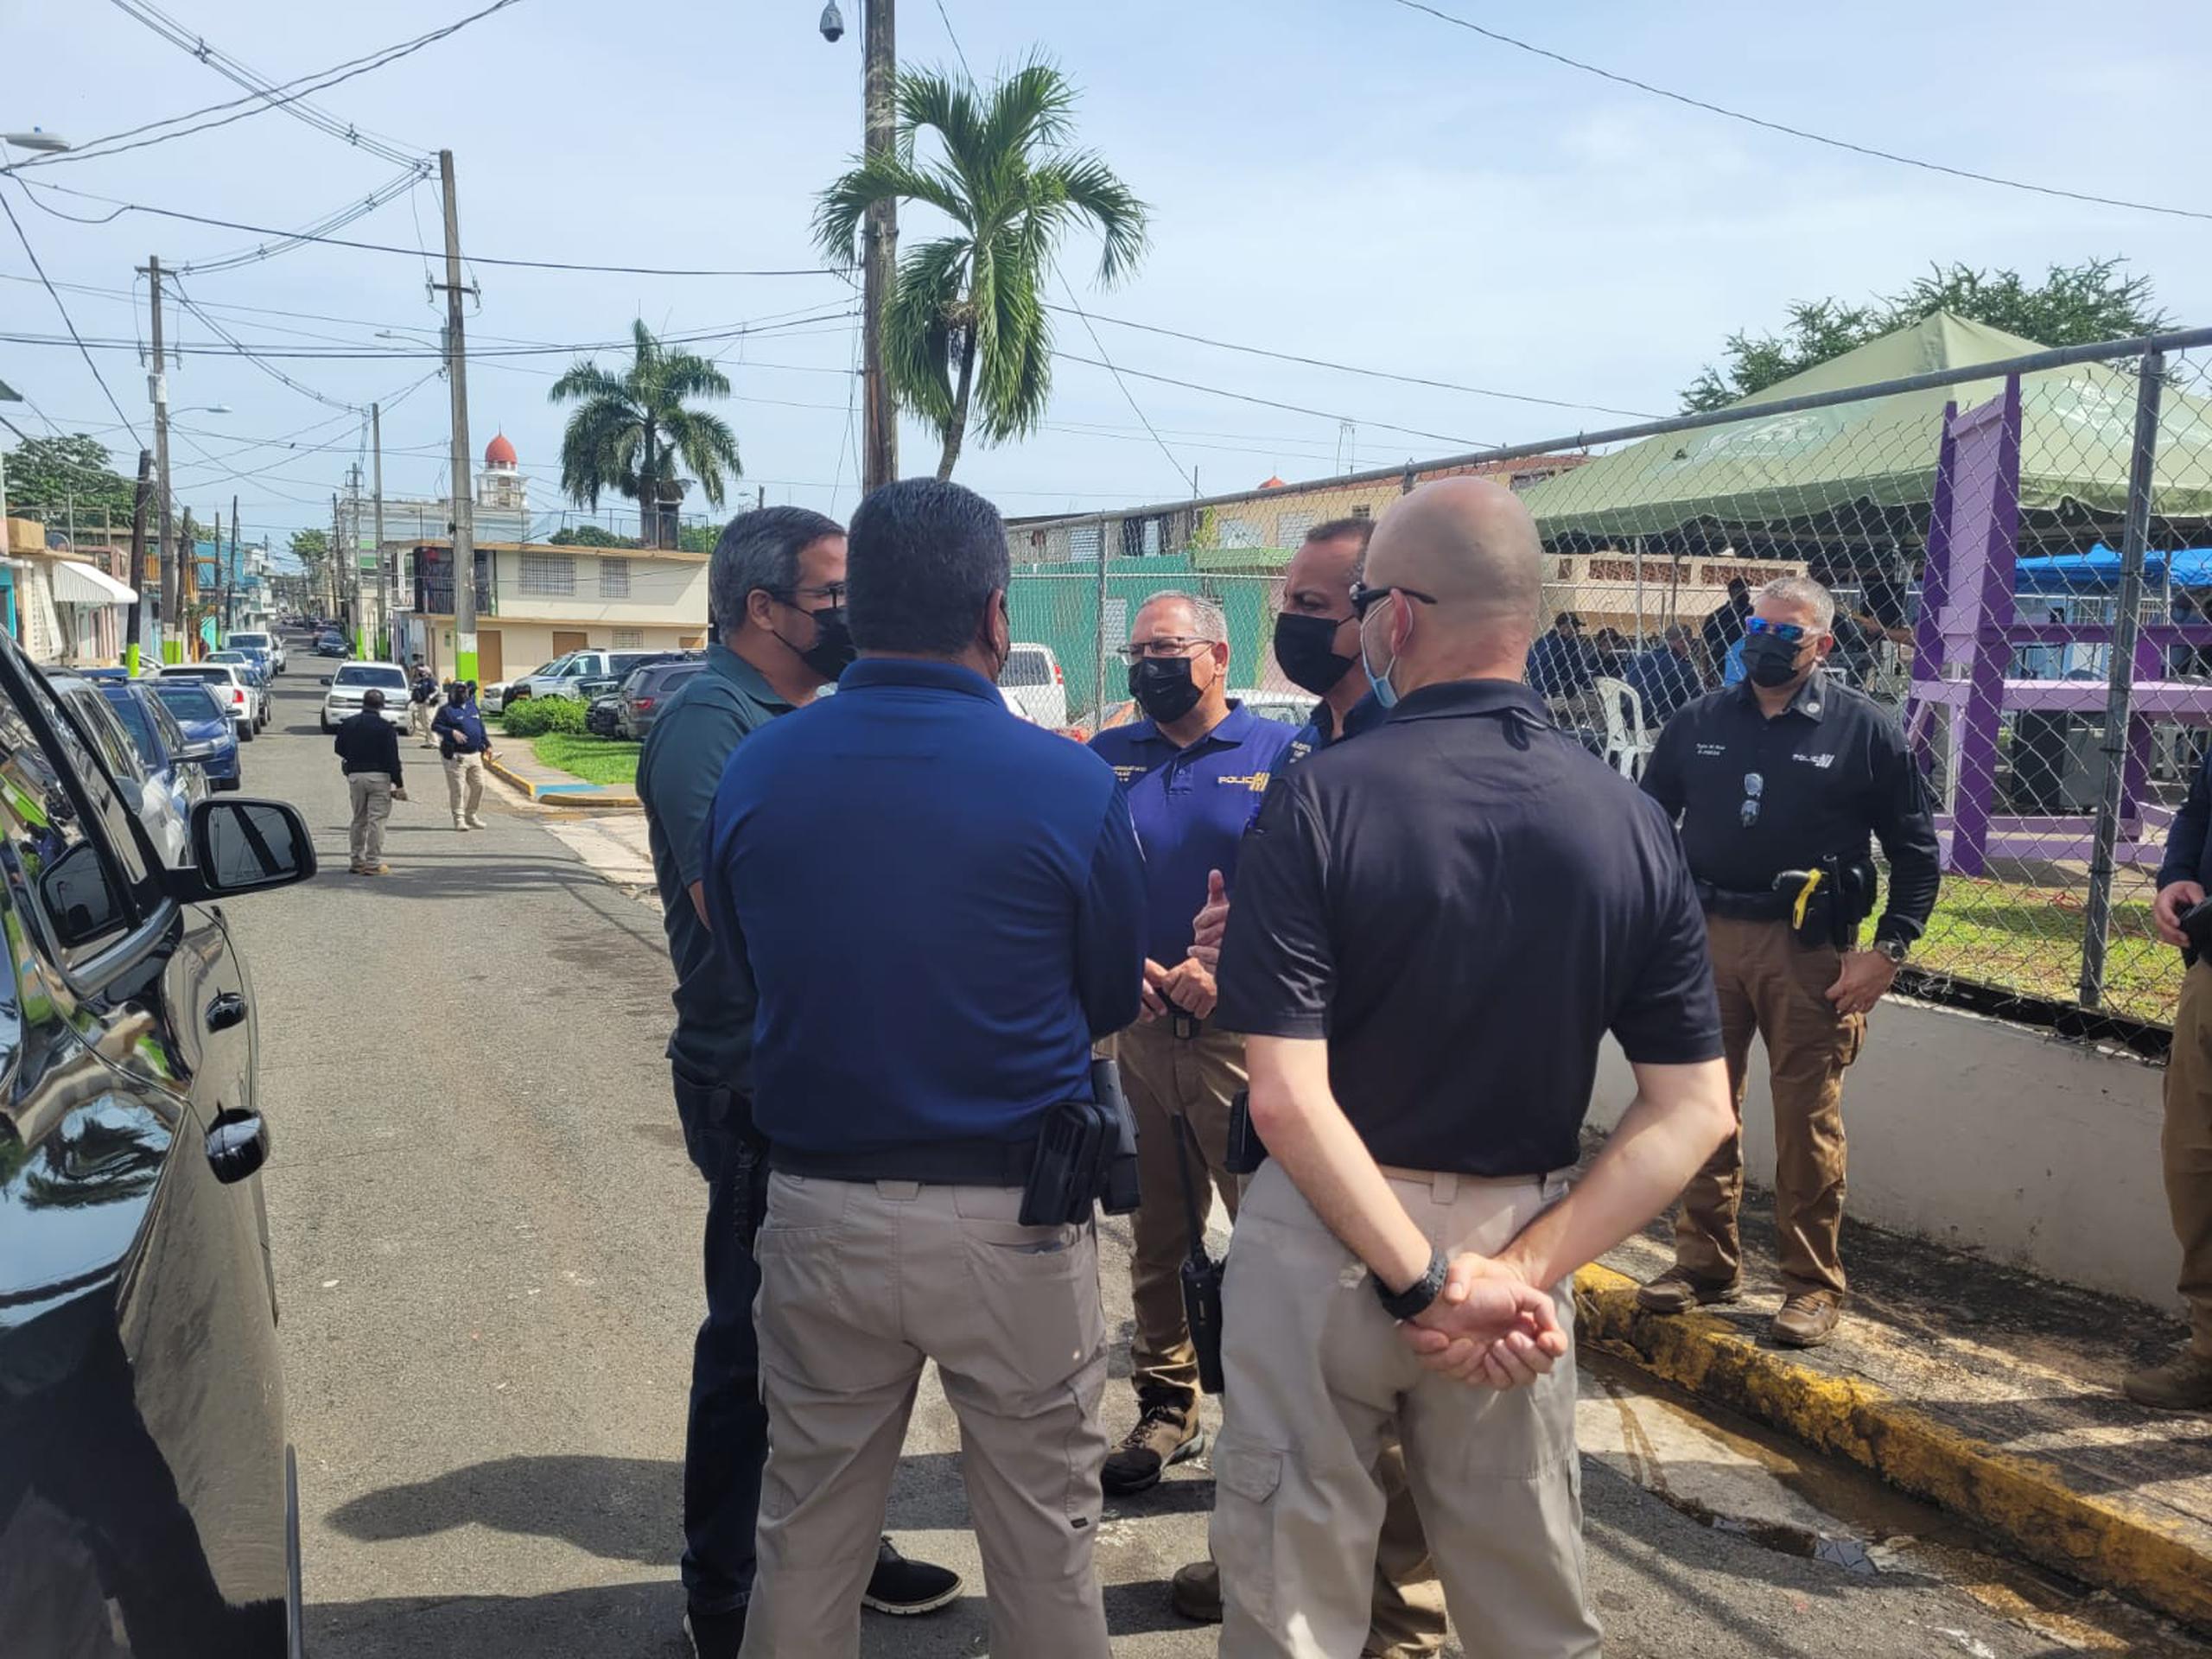 El Negociado de la Policía junto a varias agencias llevó a cabo un Operativo Comunitario en la barriada Altos de Cuba en Vega Baja, para brindar diversas ayudas.